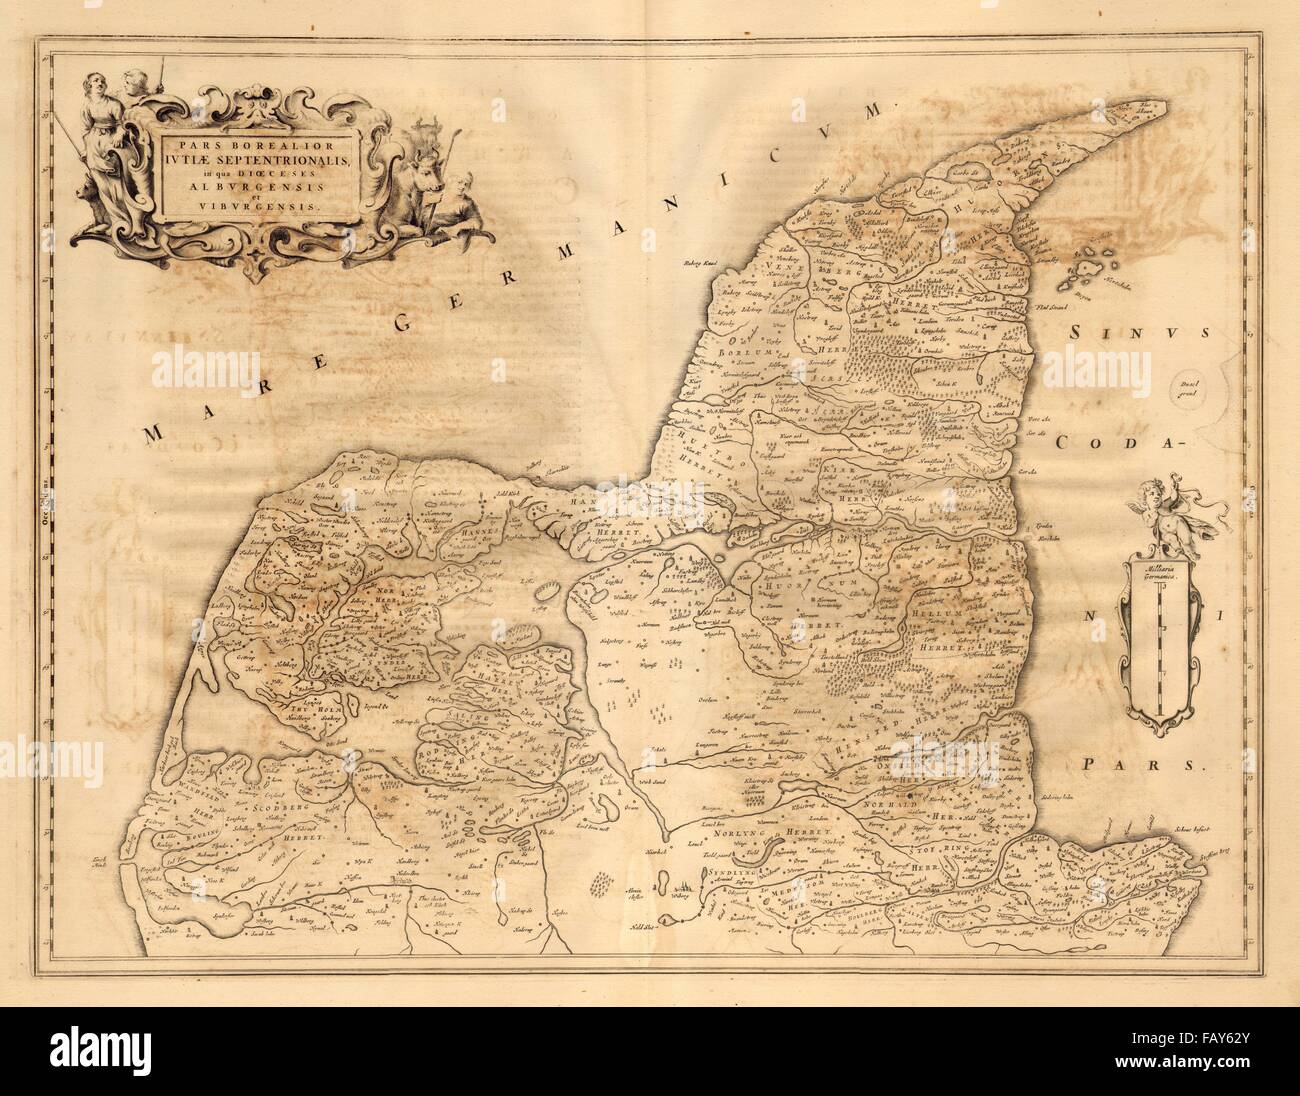 Les FER BOREALIOR IUTIAE SEPTENTRIONALIS. Le nord du Jutland. Le Danemark. Carte de BLAEU, c1667 Banque D'Images